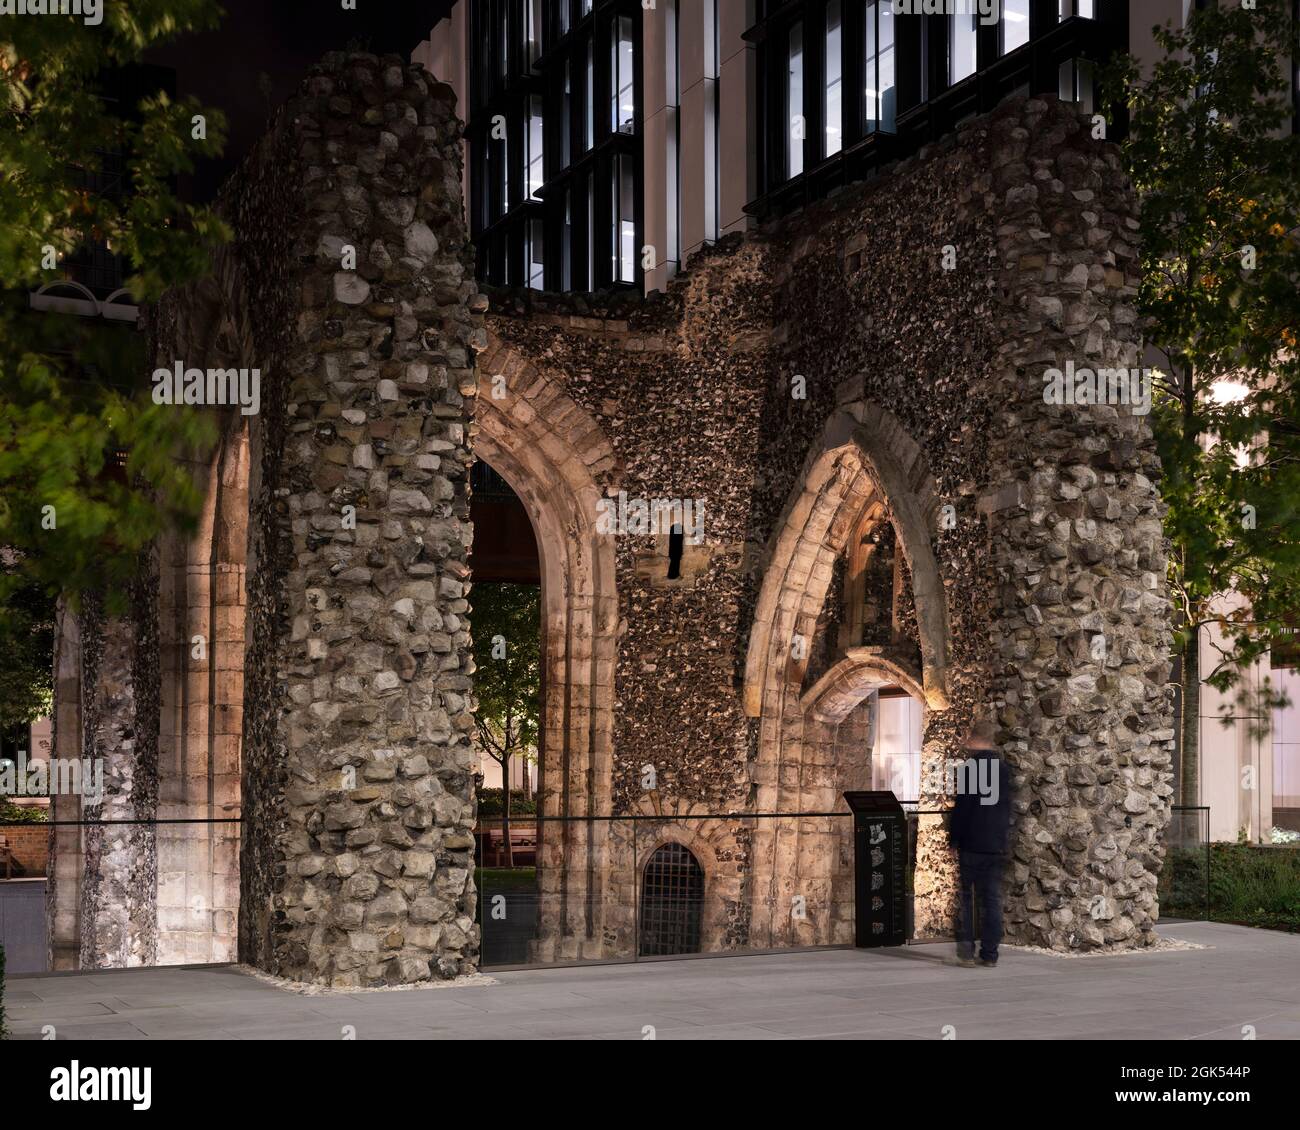 Blick auf die Ruinen der St. Alphage Kirche von der Londoner Mauer aus, während Gebäude 1 nachts beleuchtet ist. London Wall Place, London, Großbritannien. Archi Stockfoto